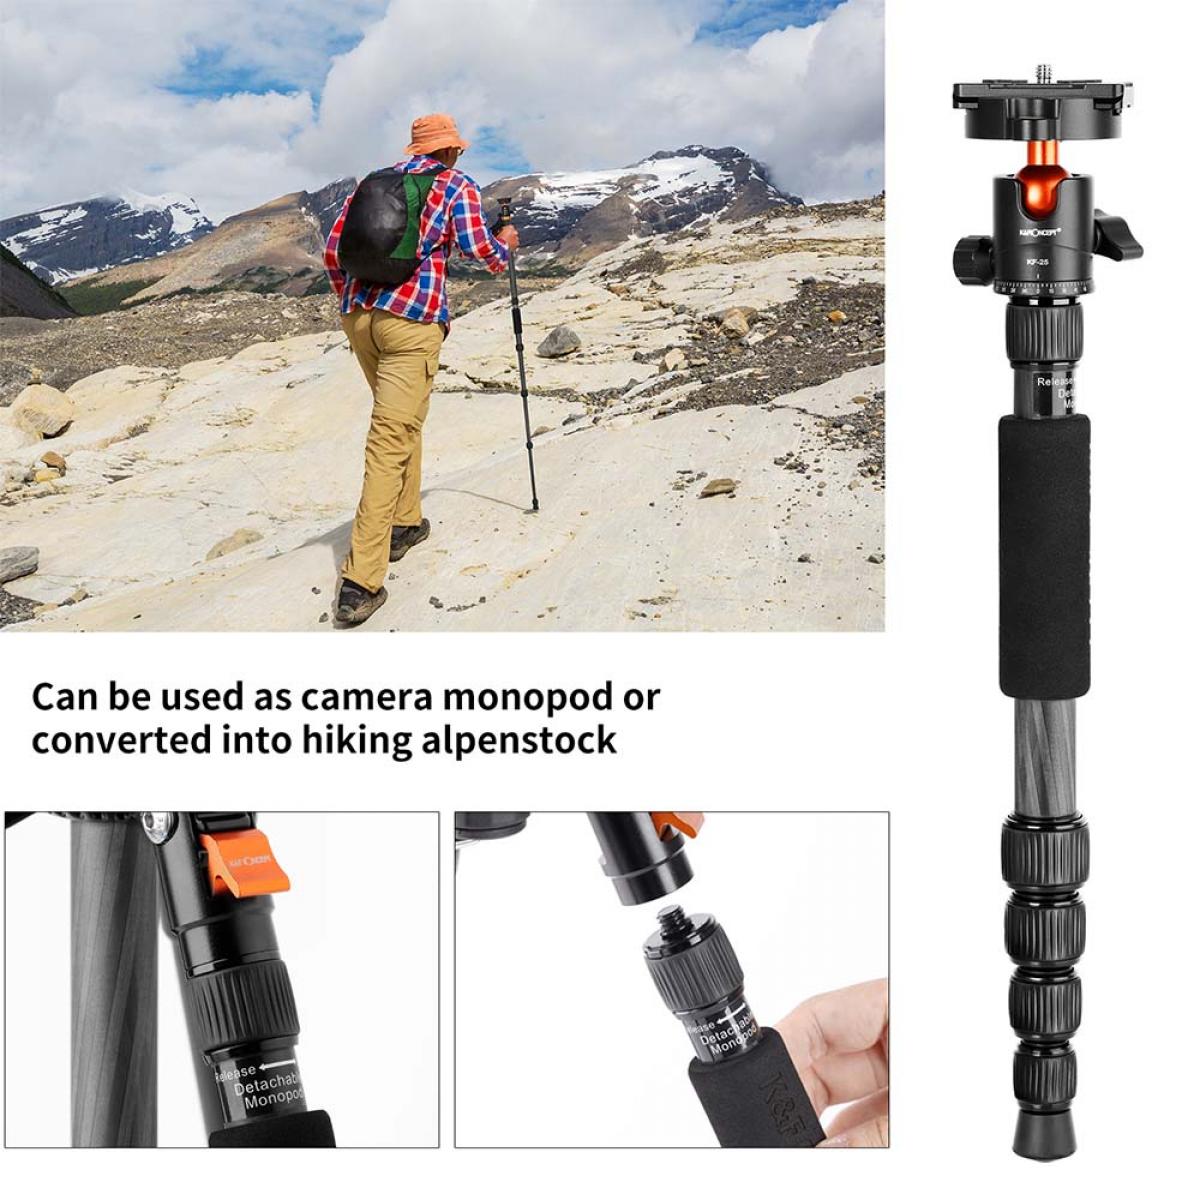 カメラの一脚として使用することも、ハイキング用アルペンストックに変換することもできます